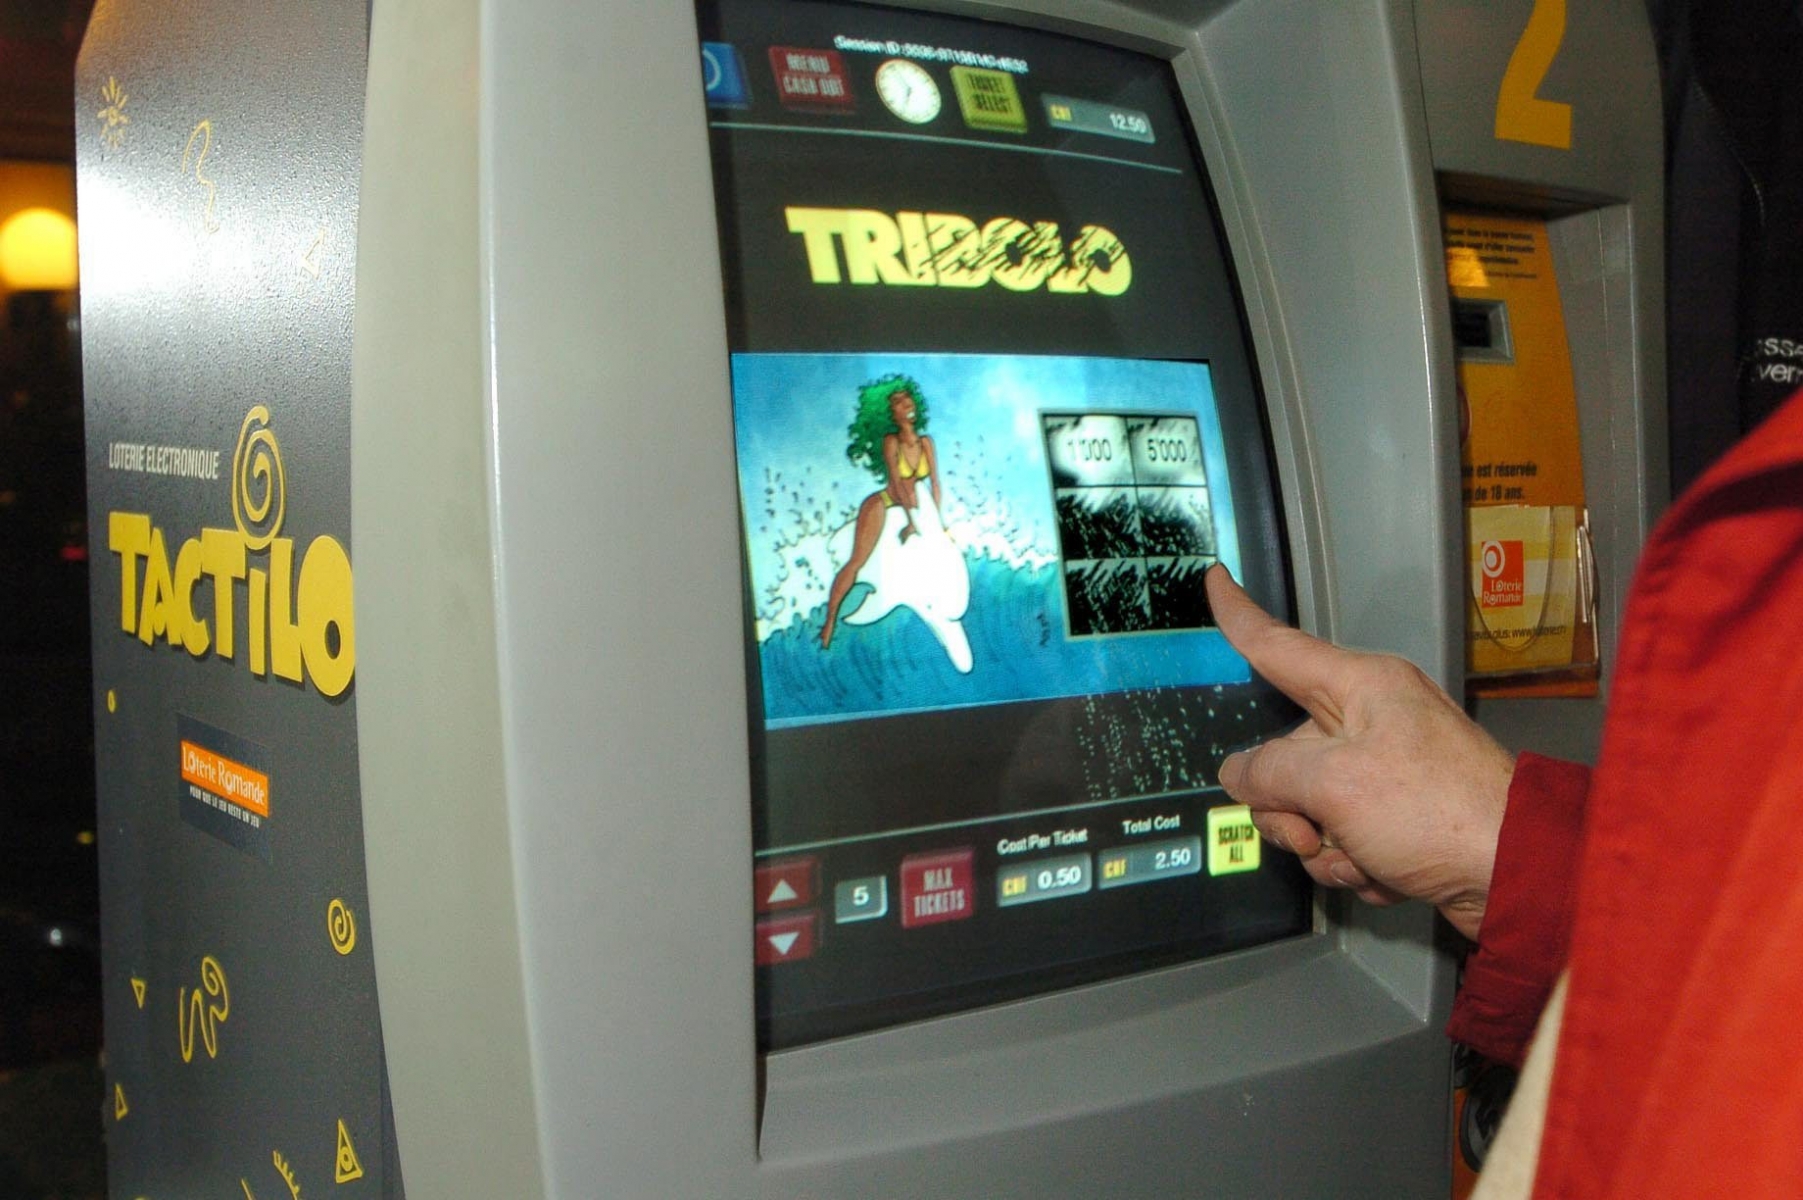 Le Tactilo,jeu électronique de la Loterie romande est exploité dans les établissements publics, malgré une tentative avortée de l'interdire en dehors des casinos. Photo Richard Leuenberger